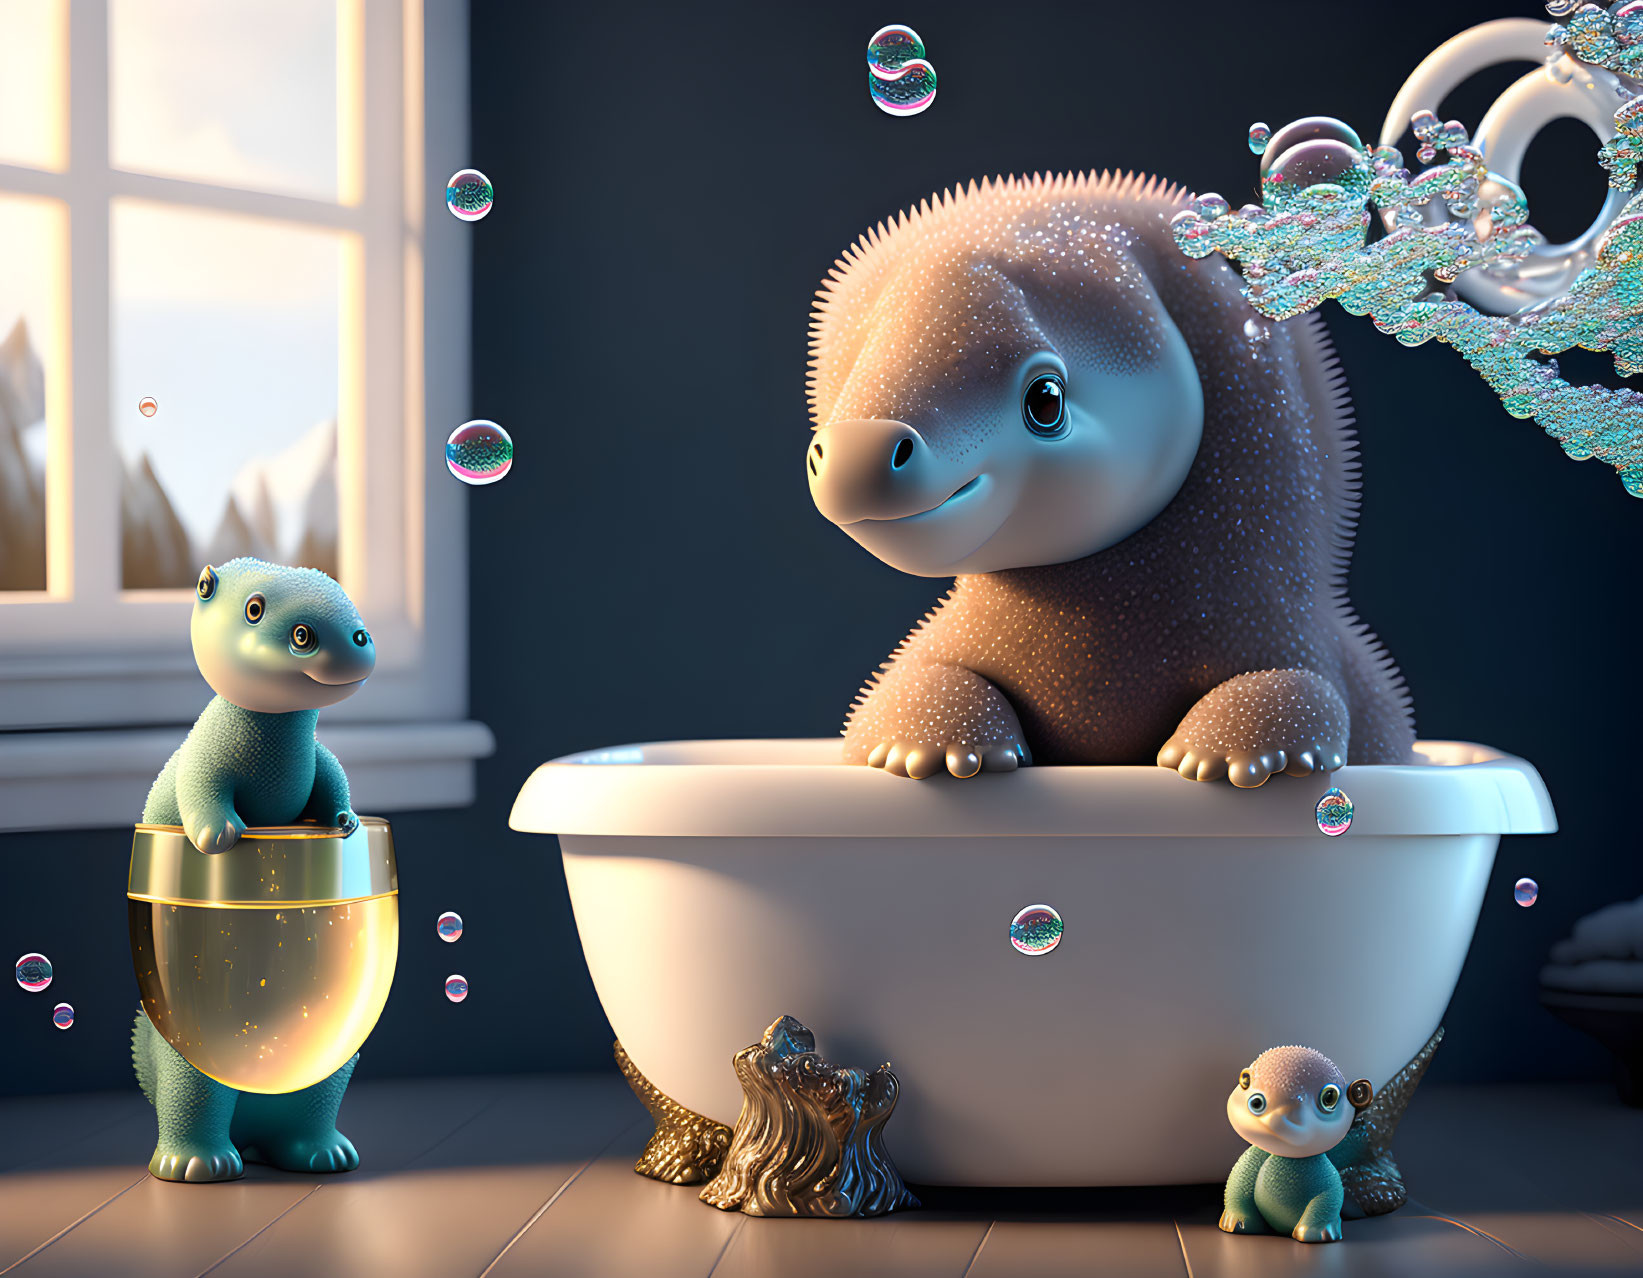 Adorable chubby cartoon dinosaurs in a cozy bath scene